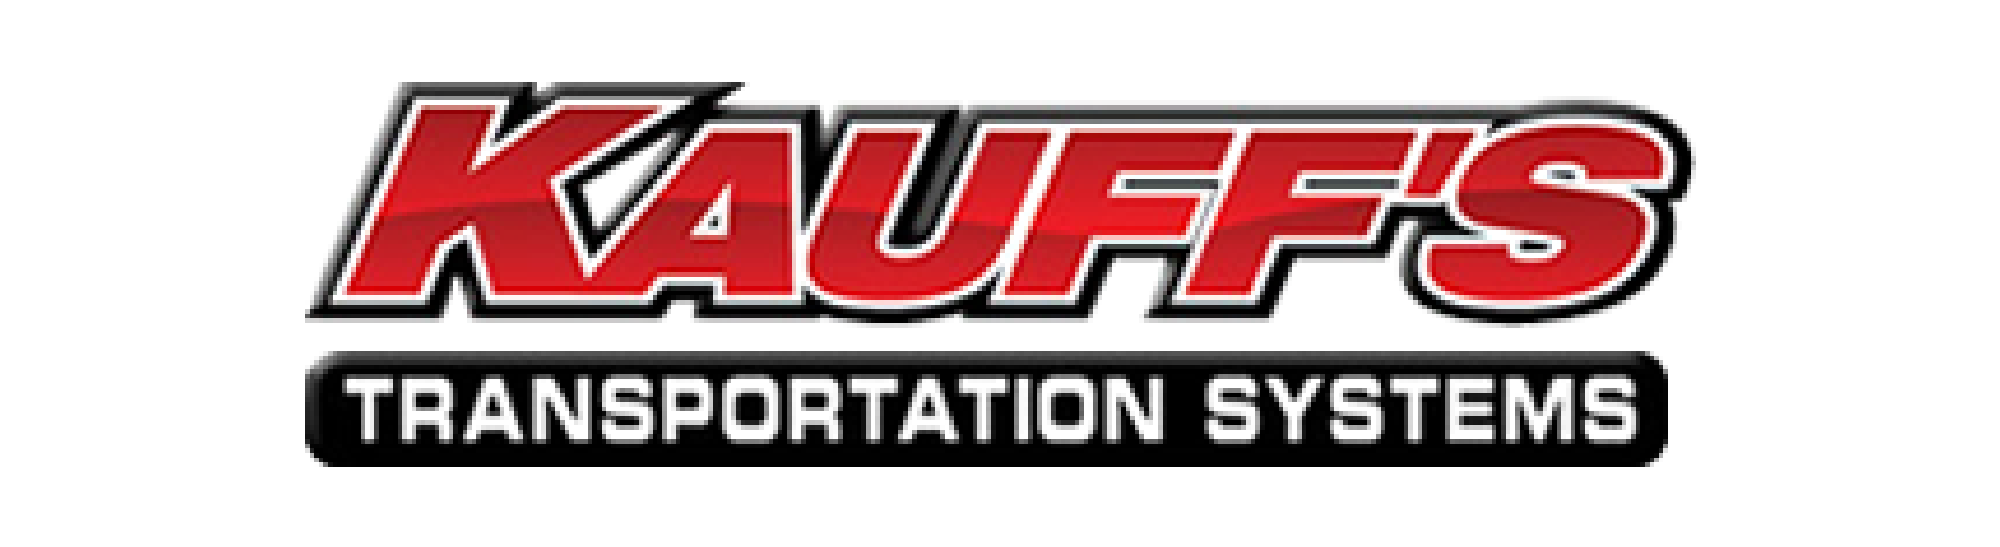 kauffs-transportation